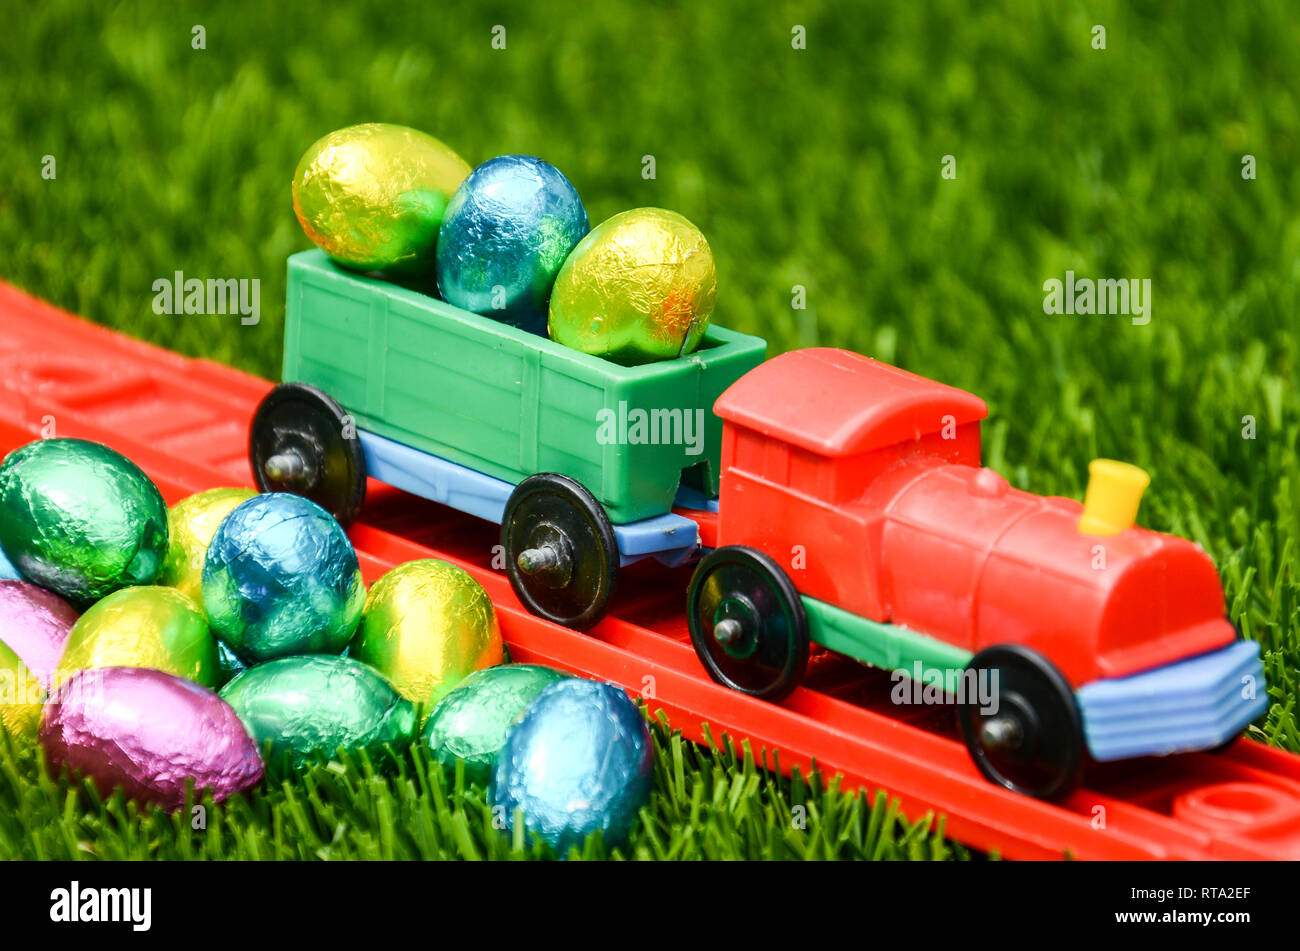 Tren de juguete divertido de colores brillantes con una carga de huevos de  Pascua y de la pila de huevos de Pascua sobre el césped. Concepto de  Pascua, vacaciones, jugar y la